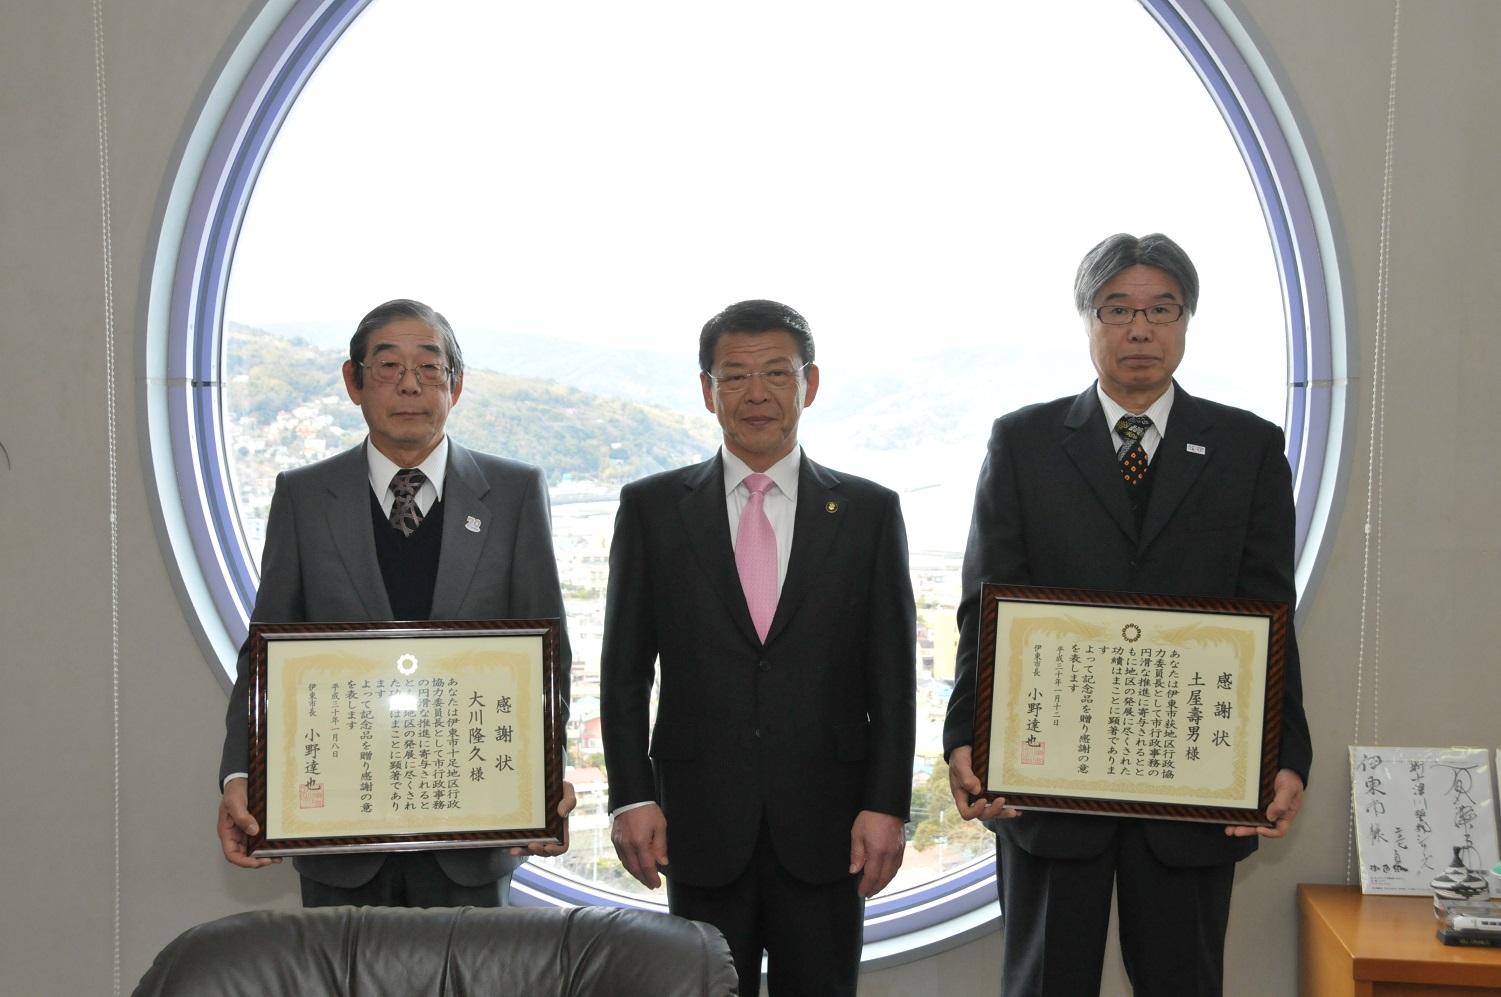 区長を退任し感謝状を贈呈された十足の大川隆久さんと荻の土屋寿男さんと伊東市長の写真